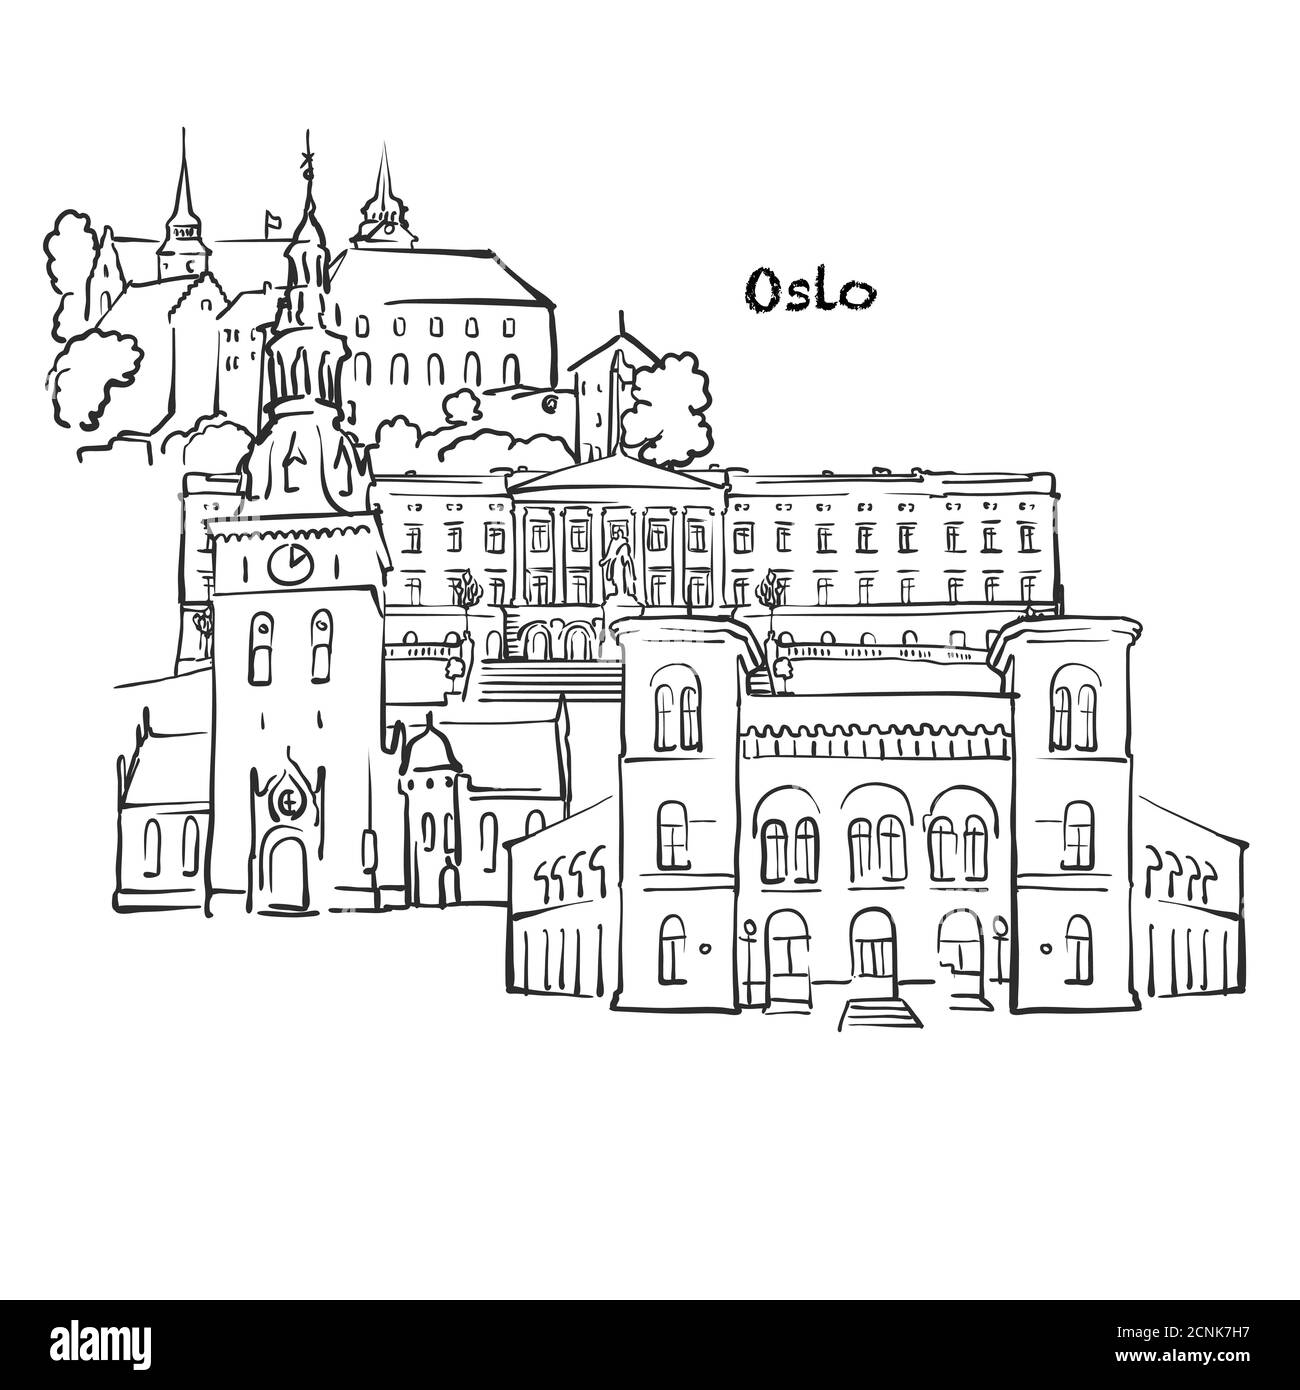 Berühmte Gebäude von Oslo, Norwegen Komposition. Handgezeichnete schwarz-weiße Vektorgrafik. Gruppierte und bewegliche Objekte. Stock Vektor